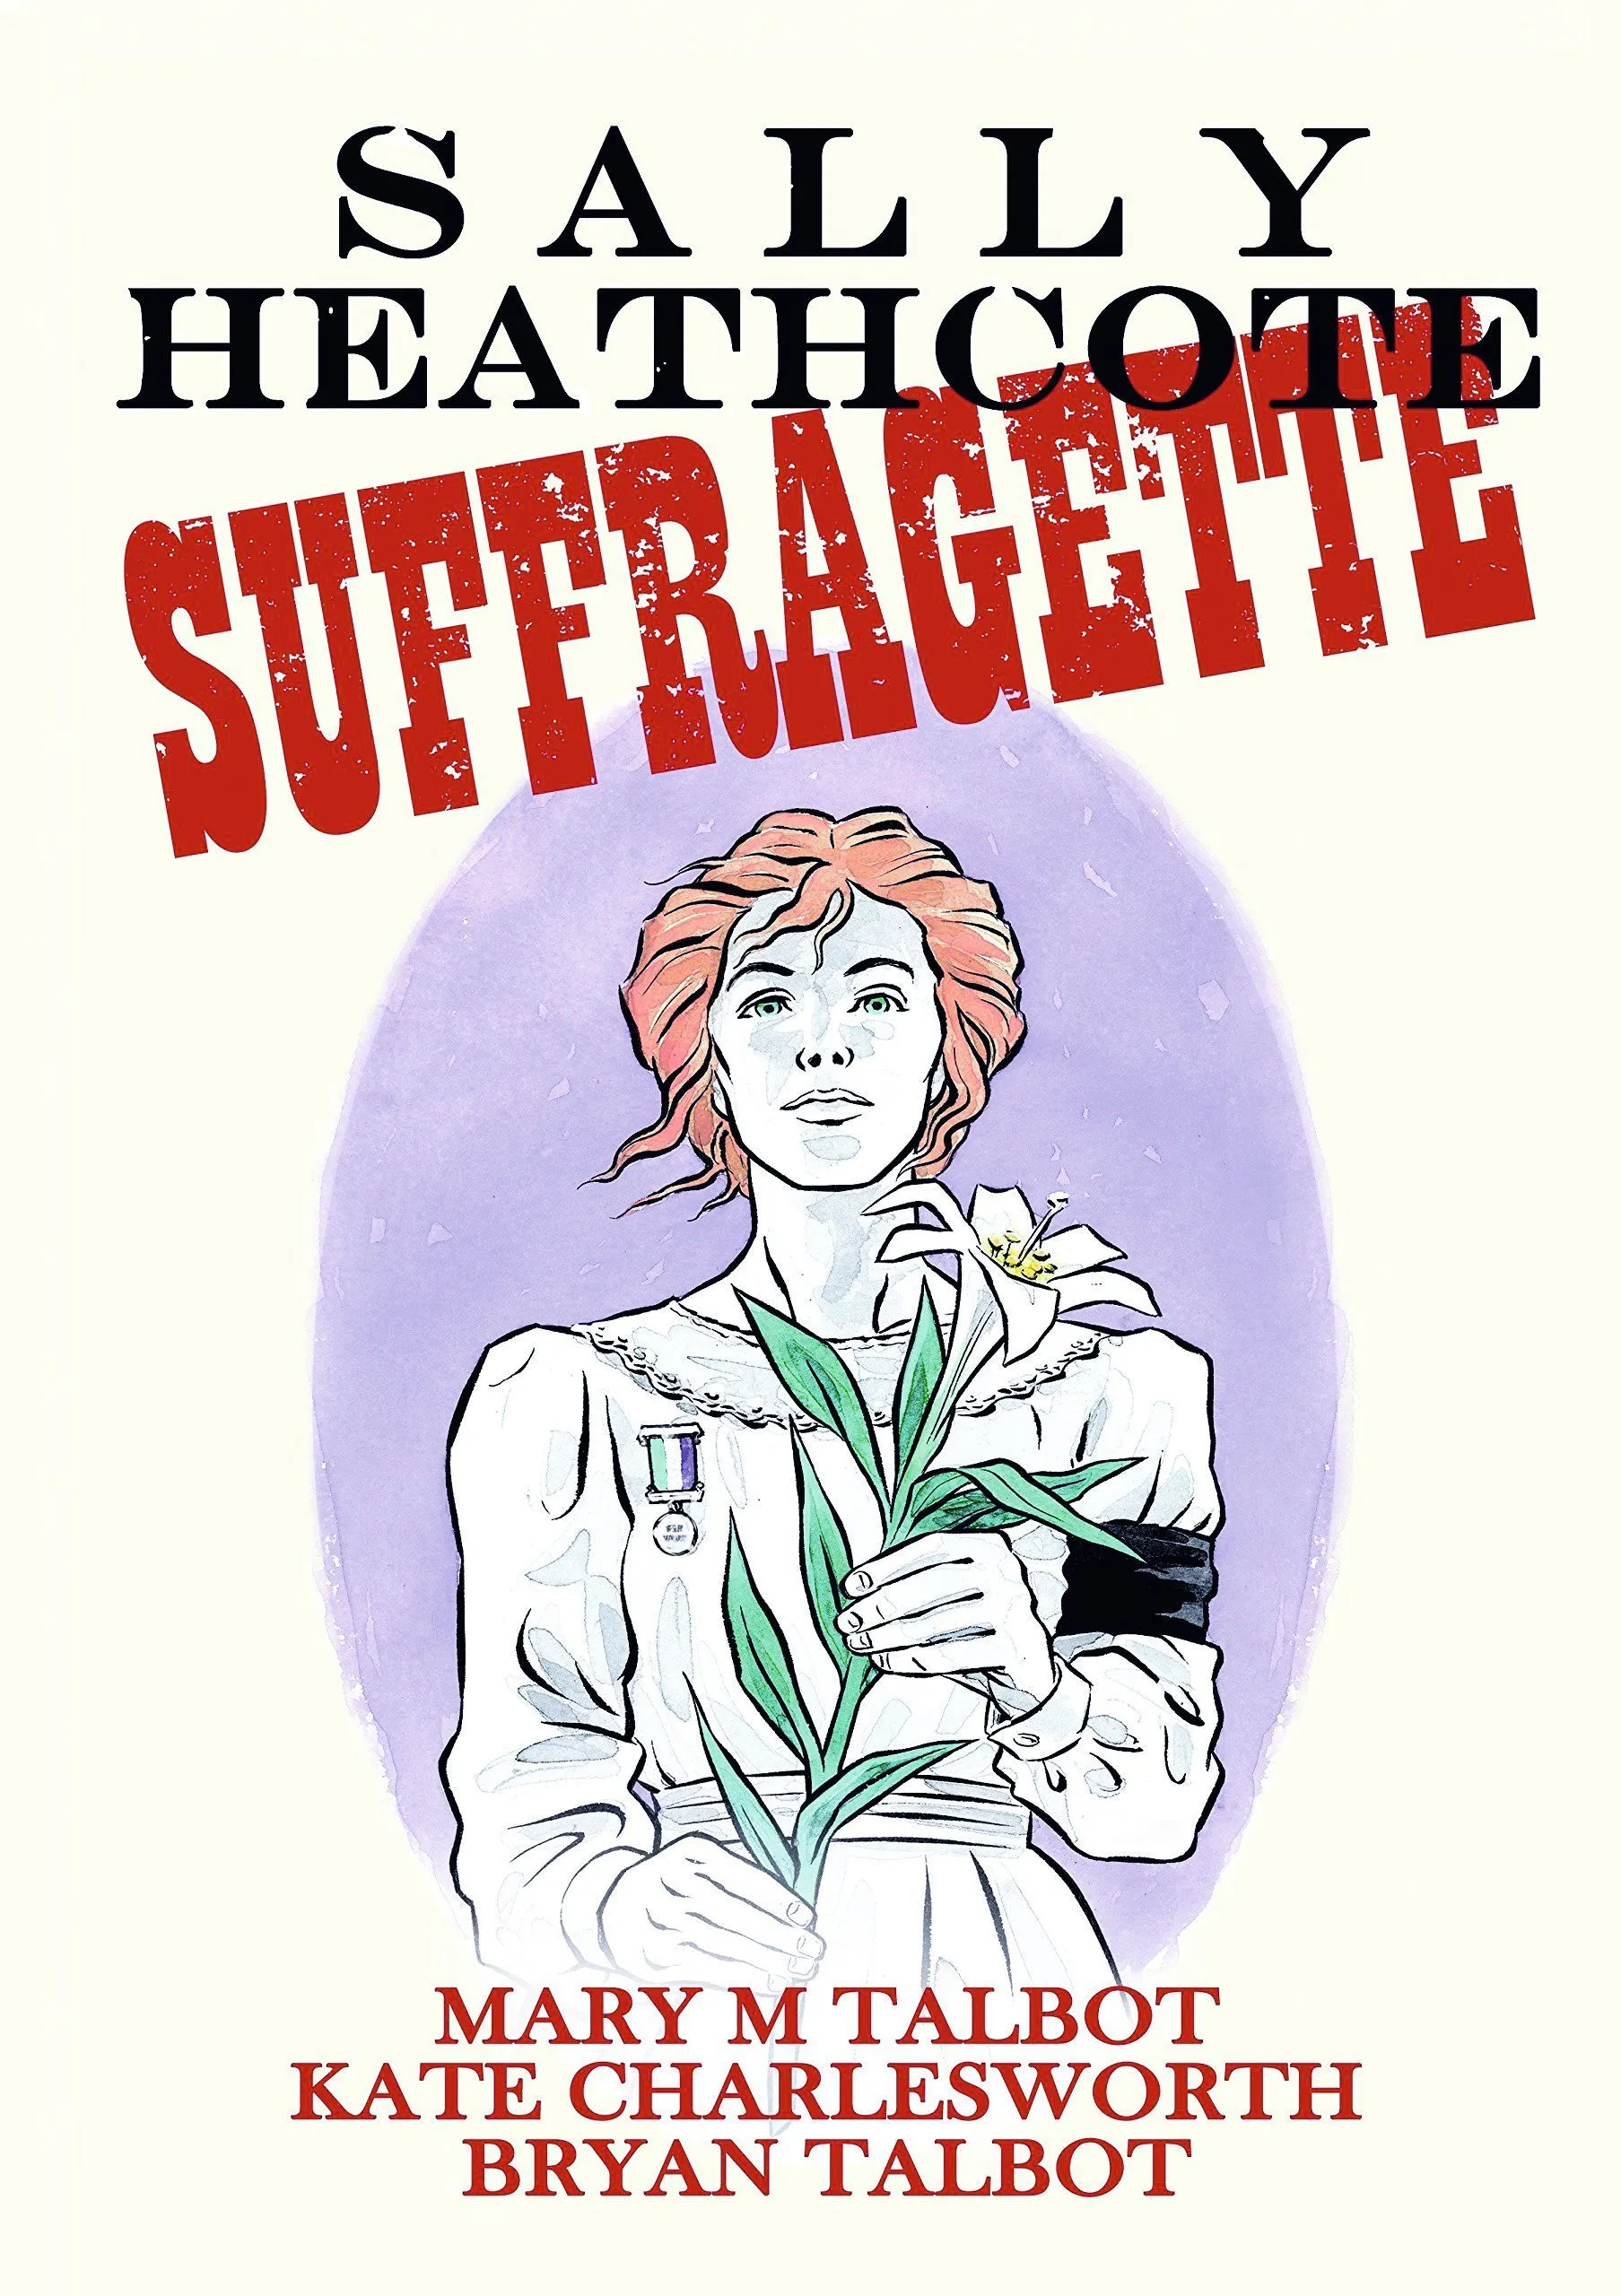 couverture du roman graphique Sally Heathcote : suffragette